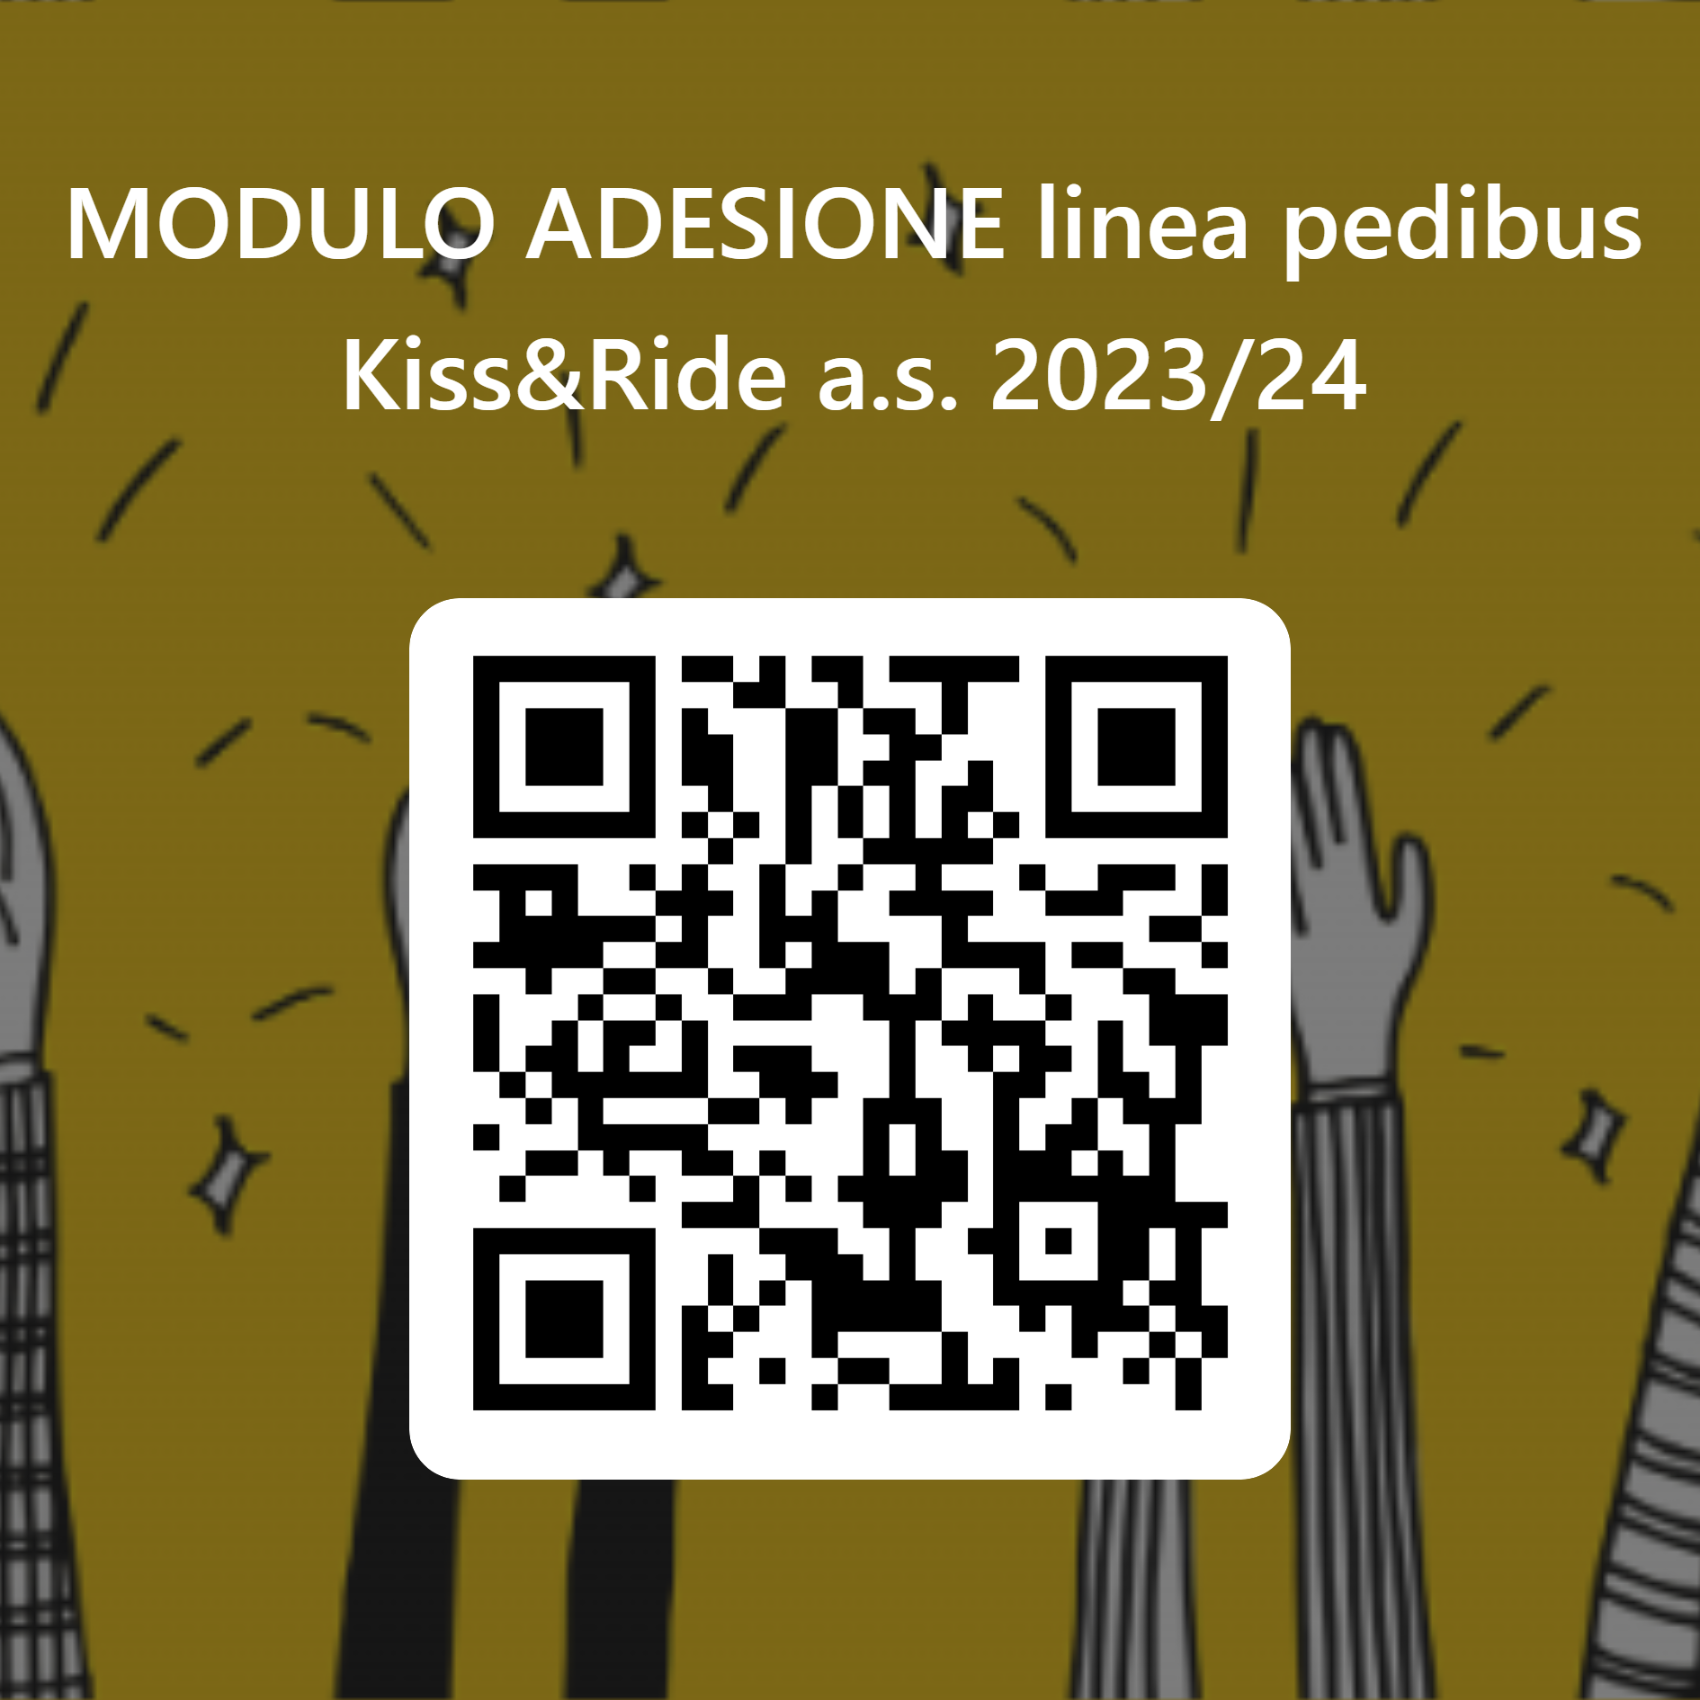 QRCode per MODULO ADESIONE linea pedibus Kiss&Ride a.s. 2023_24.png